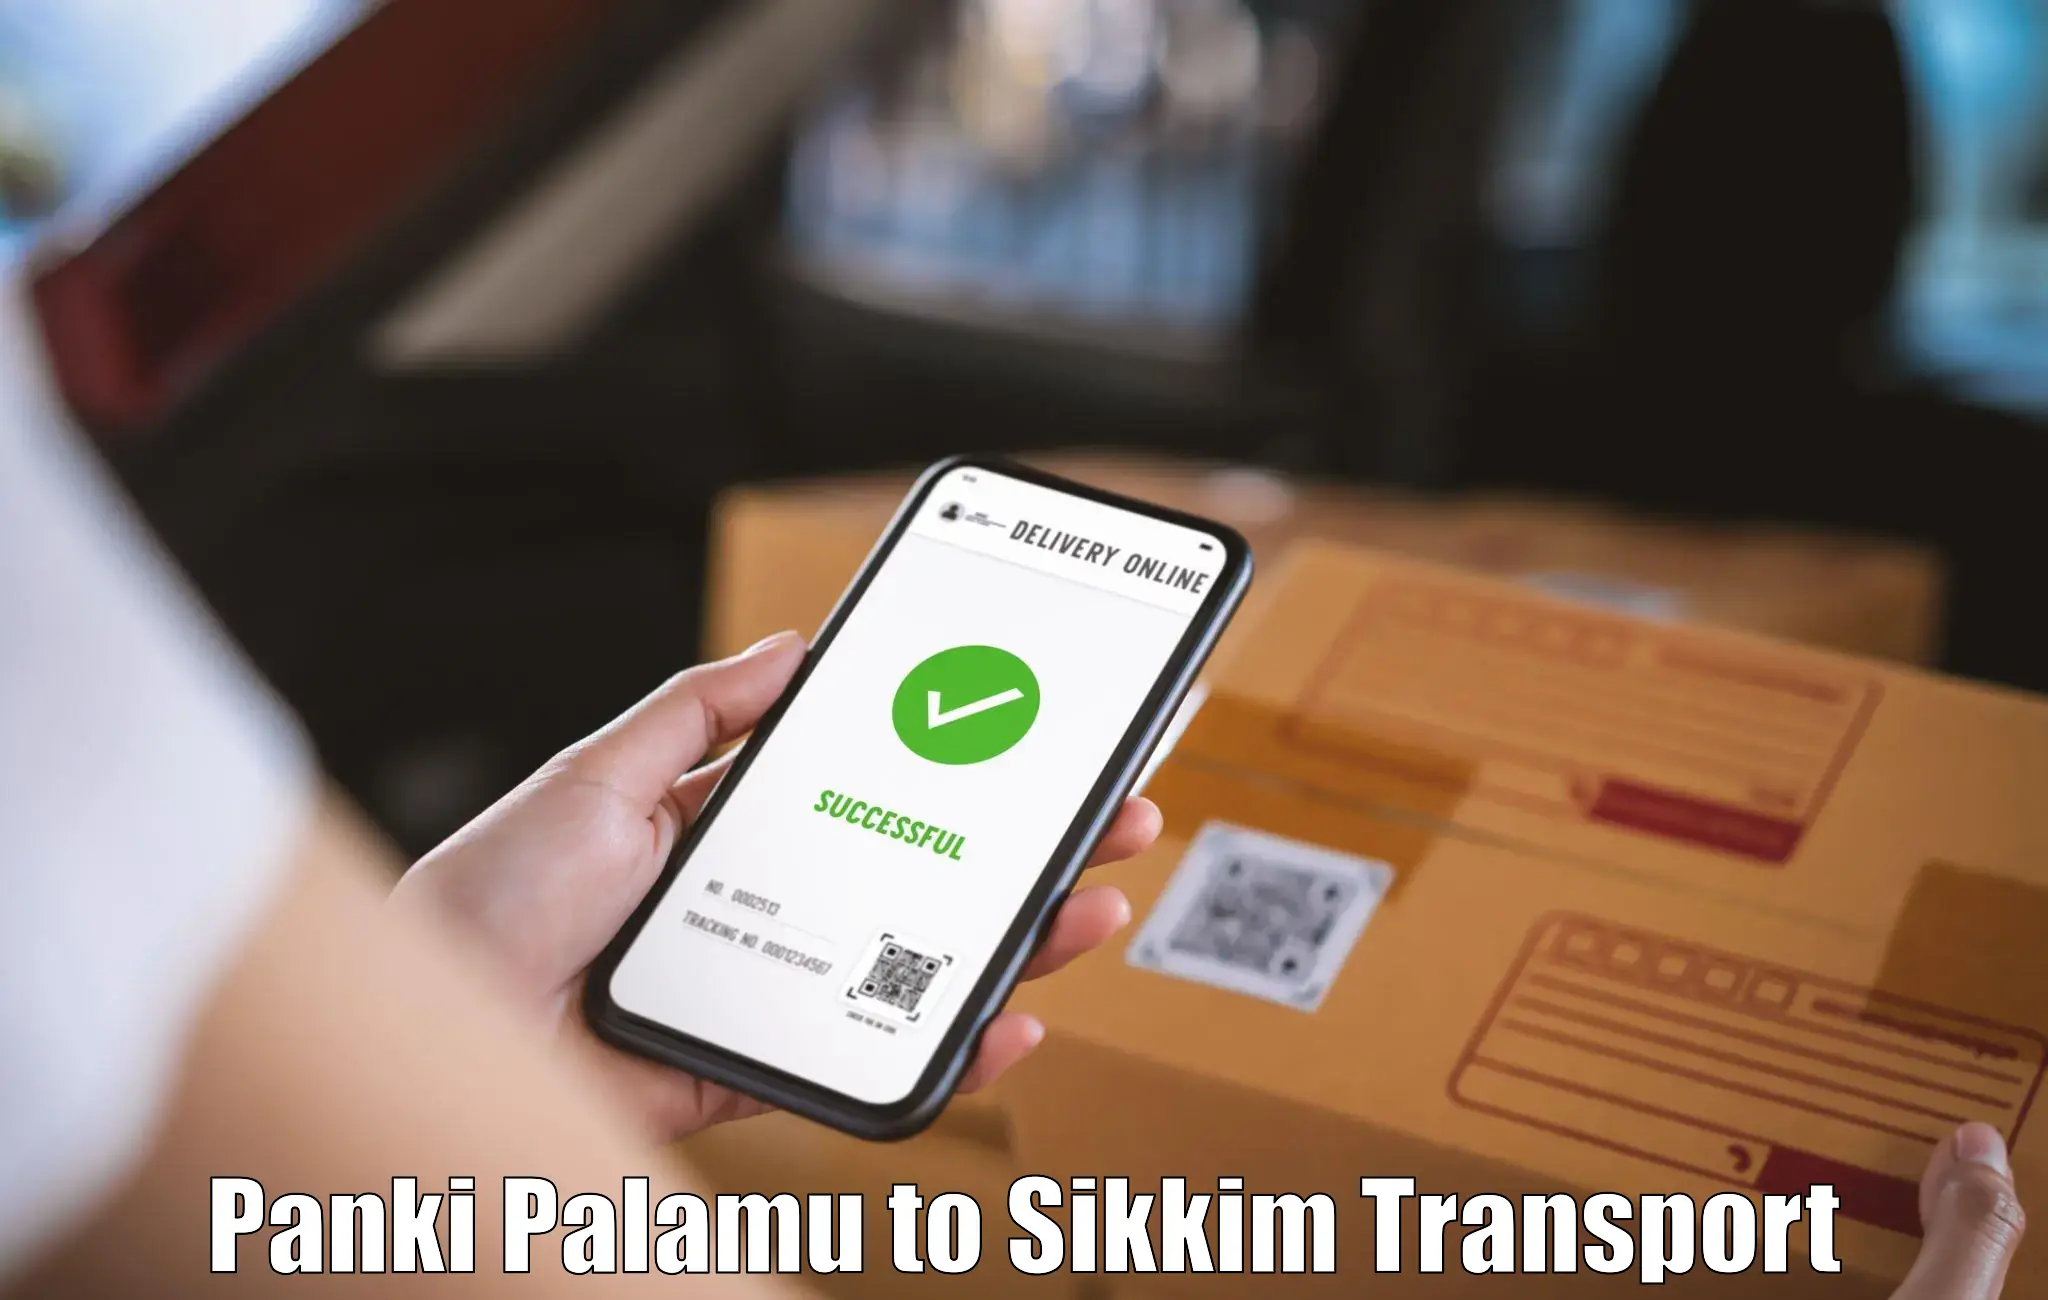 Cycle transportation service Panki Palamu to Sikkim